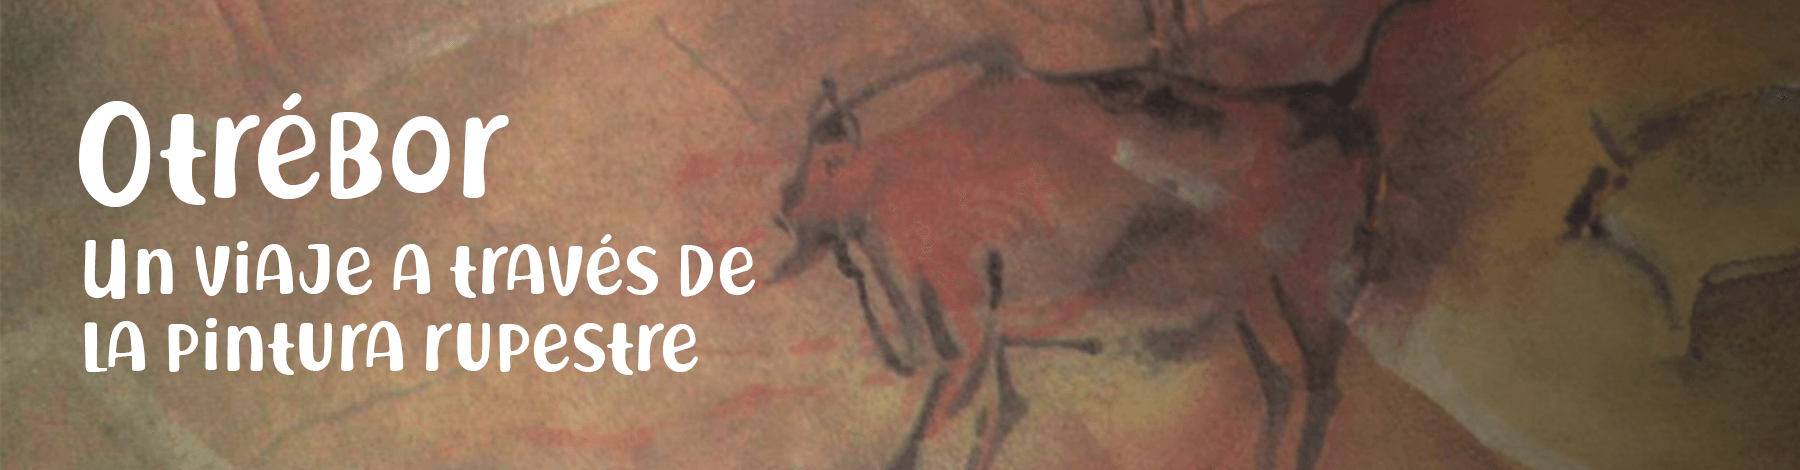 Otrébor. Un viaje a través de la pintura rupestre | Museo Amparo, Puebla | Museo Amparo, Puebla.